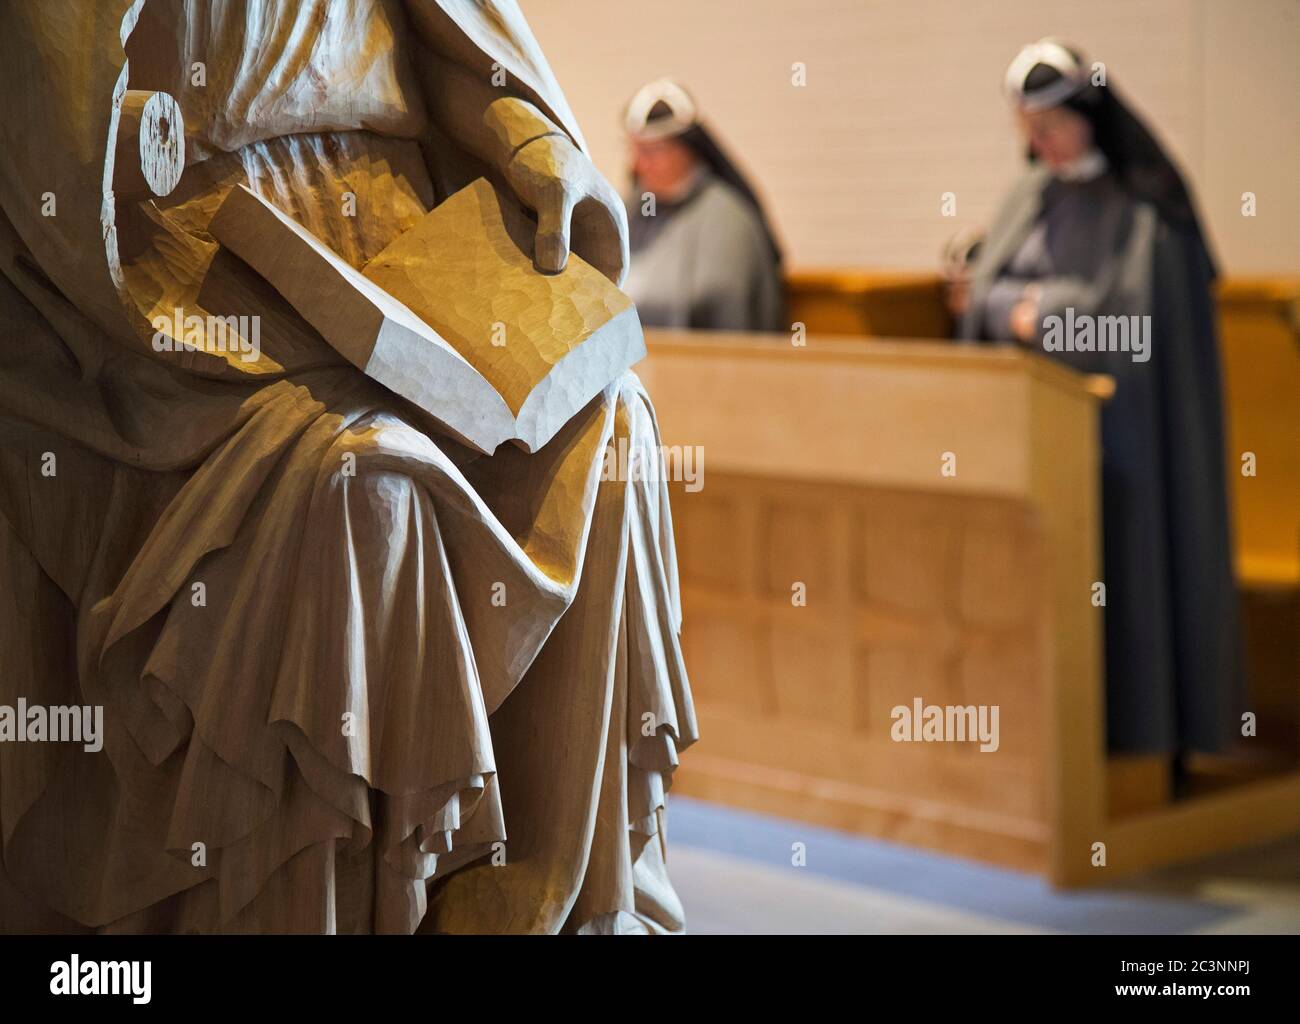 Vadstena, Svezia 20170517 le monache birgittine (o Bridgettine) durante una preghiera nel monastero cattolico di San Birgitta. Completorium è la preghiera serale nella marea, l'ultima ora di preghiera del giorno prima del resto della notte. Foto Gippe Gustafsson Foto Stock